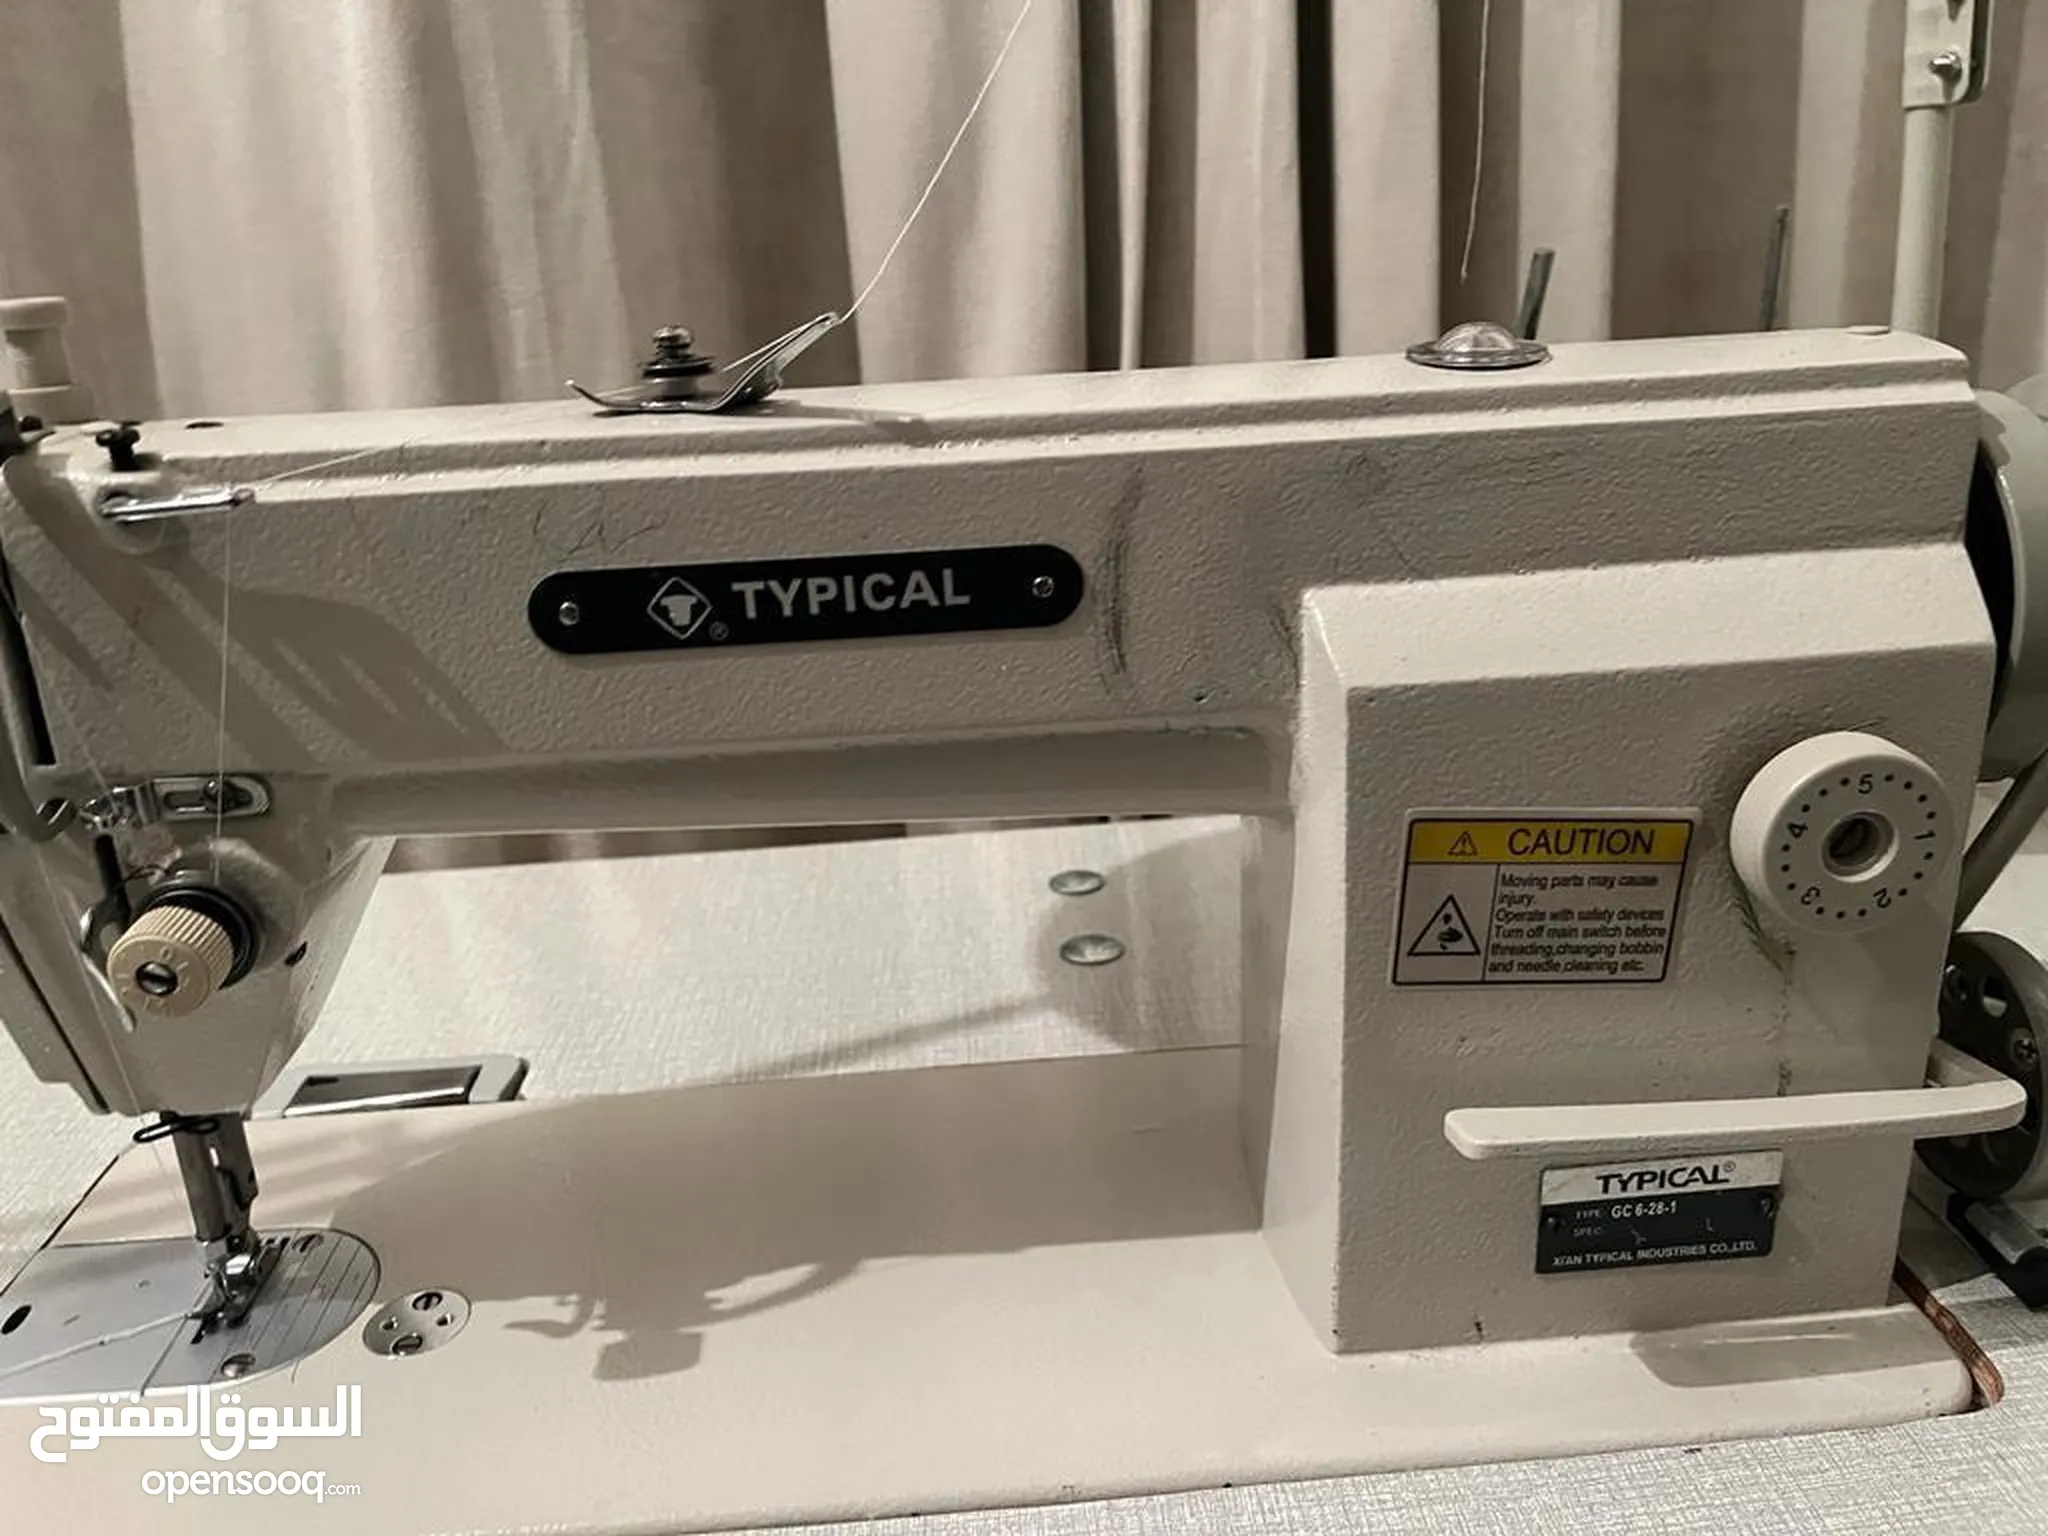 معدات ومستلزمات خياطة للبيع في دبي : ماكينات خياطة : افضل سعر